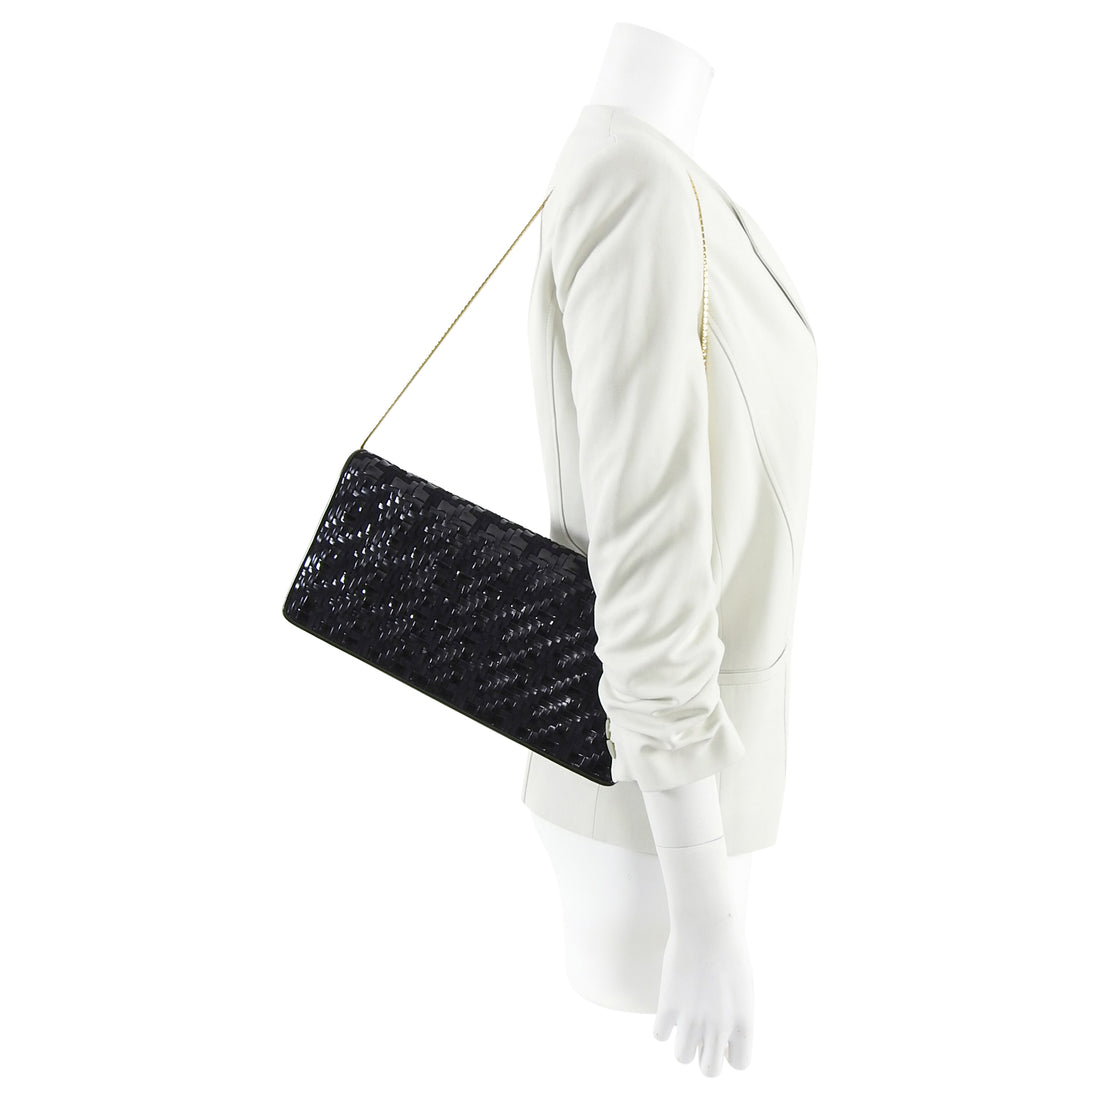 Judith Lieber 1970's Black Woven Rectangular Clutch / Shoulder Bag